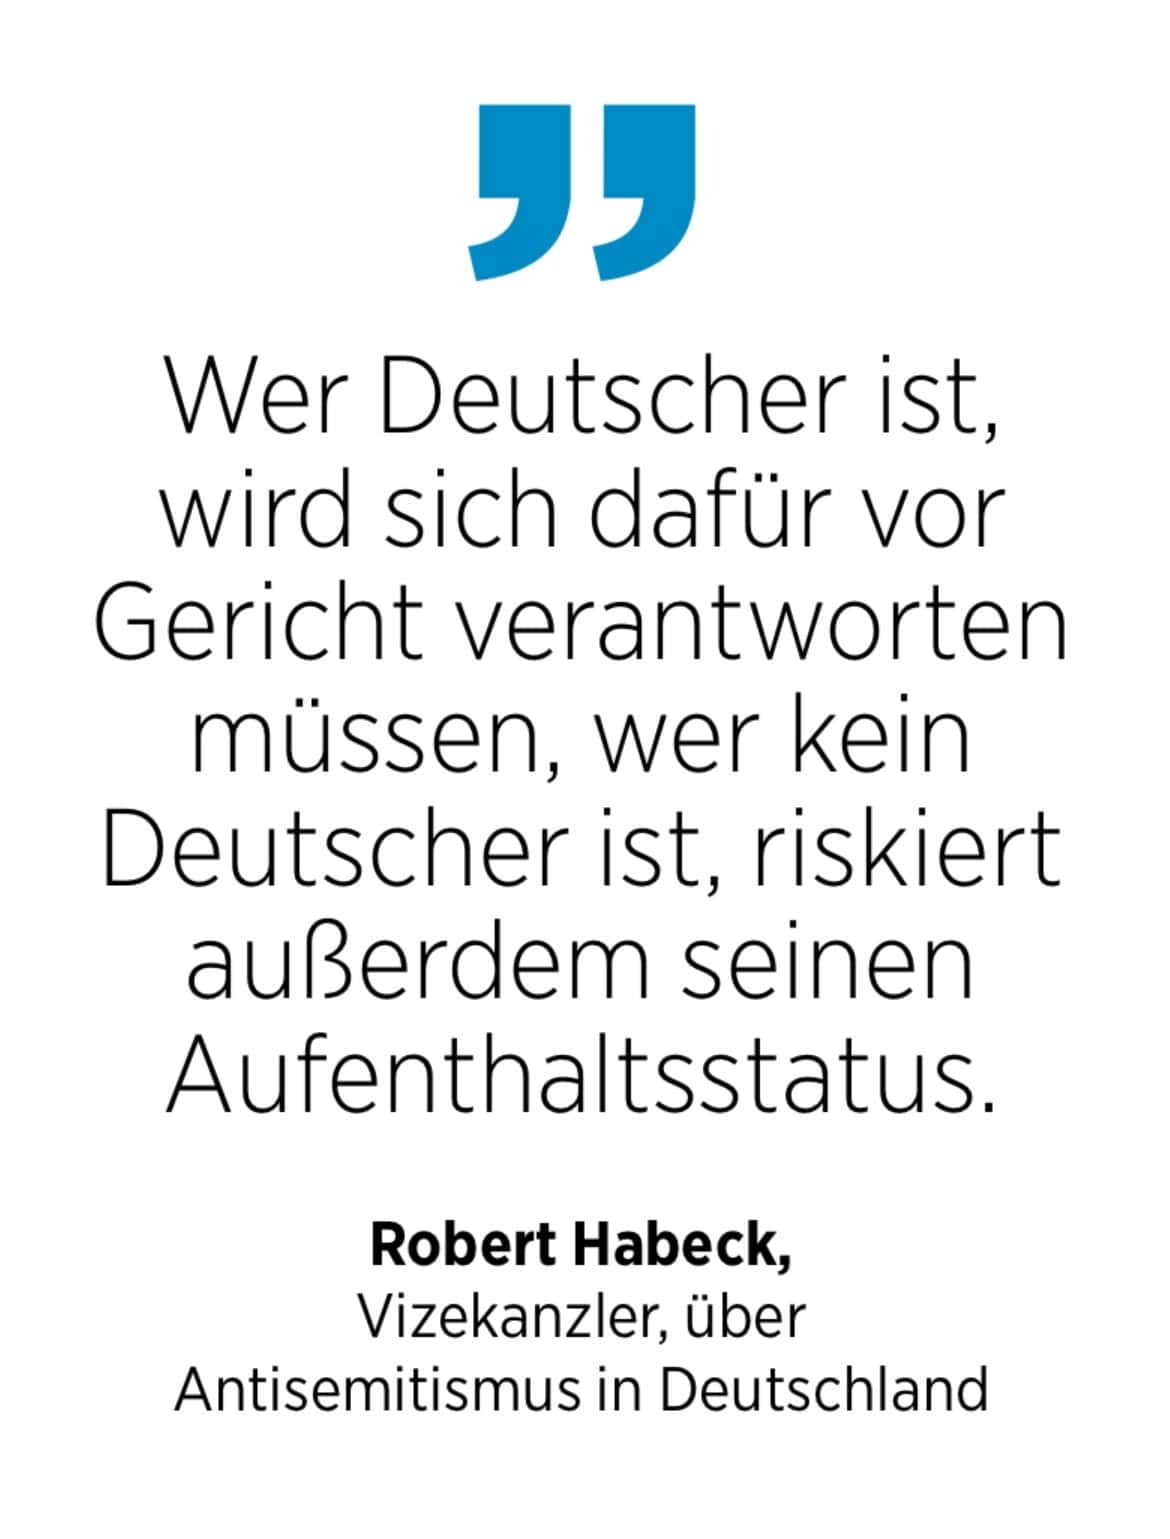 Robert Habeck, Vizekanzler, über Antisemitismus in Deutschland: Wer Deutscher ist, wird sich dafür vor Gericht verantworten müssen, wer kein Deutscher ist, riskiert außerdem seinen Aufenthaltsstatus.